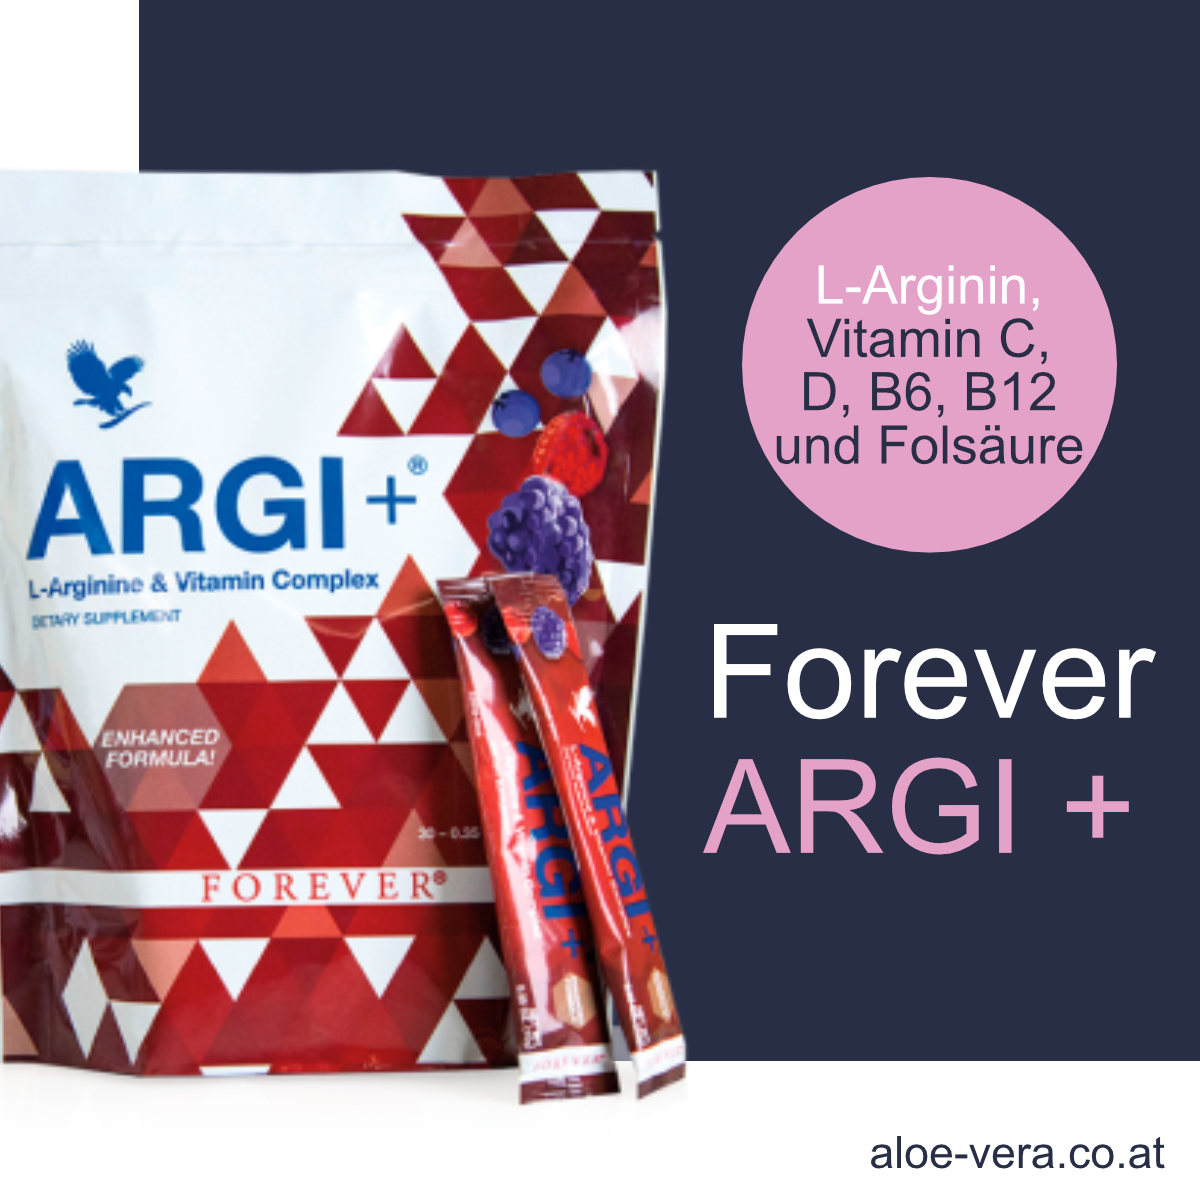 Forever Argi + plus L-Arginin Argi Sticks B-Vitamine B6 B12 kaufen